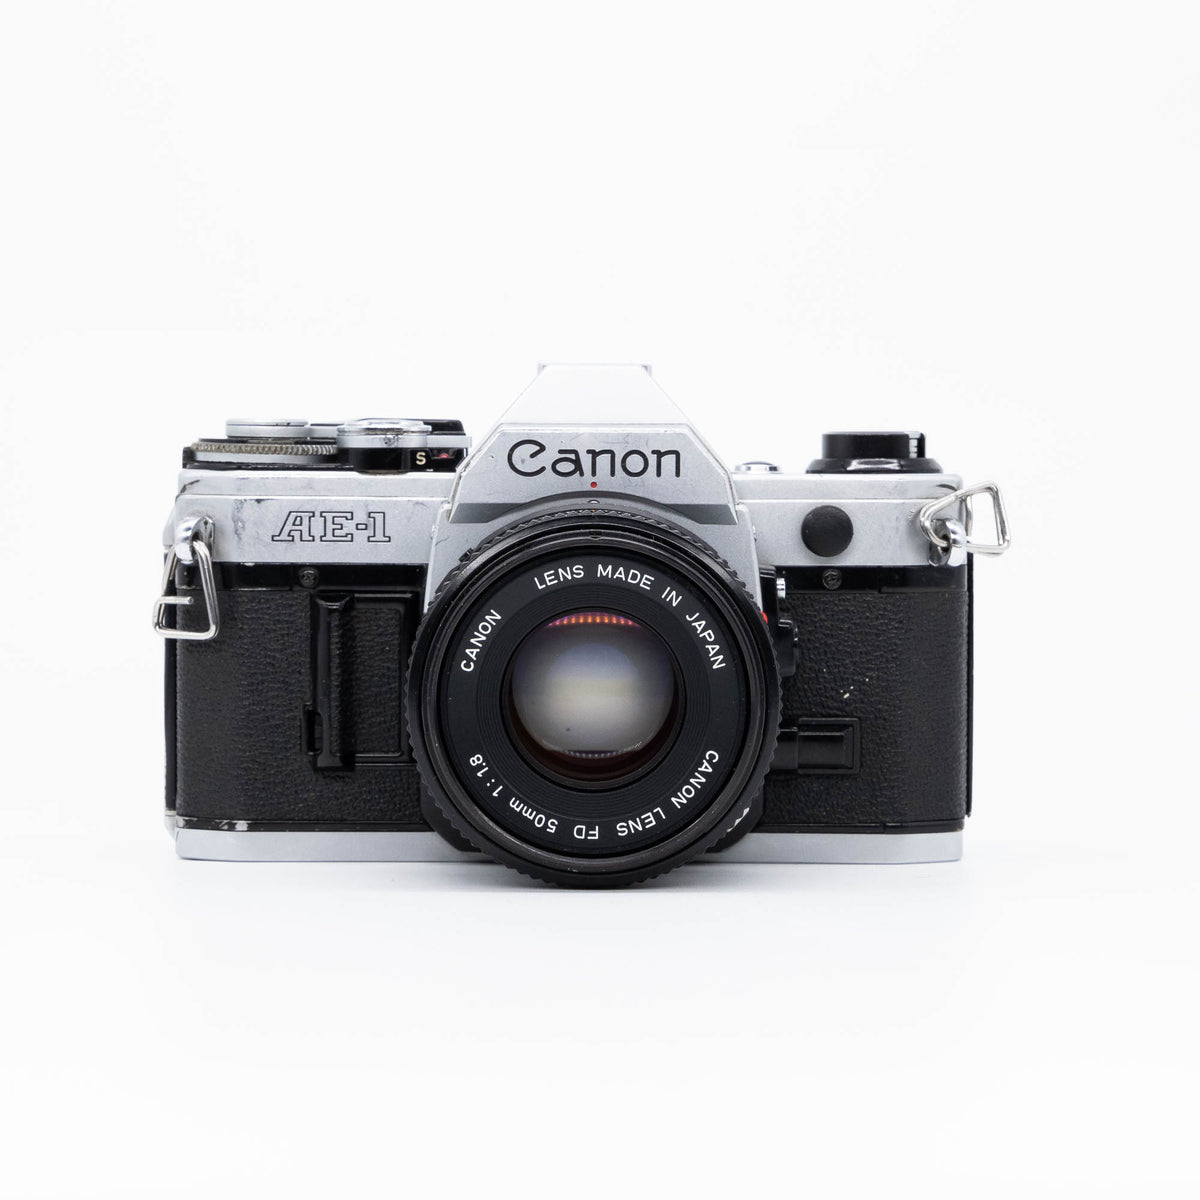 Canon AE-1 & 50mm f/1.8